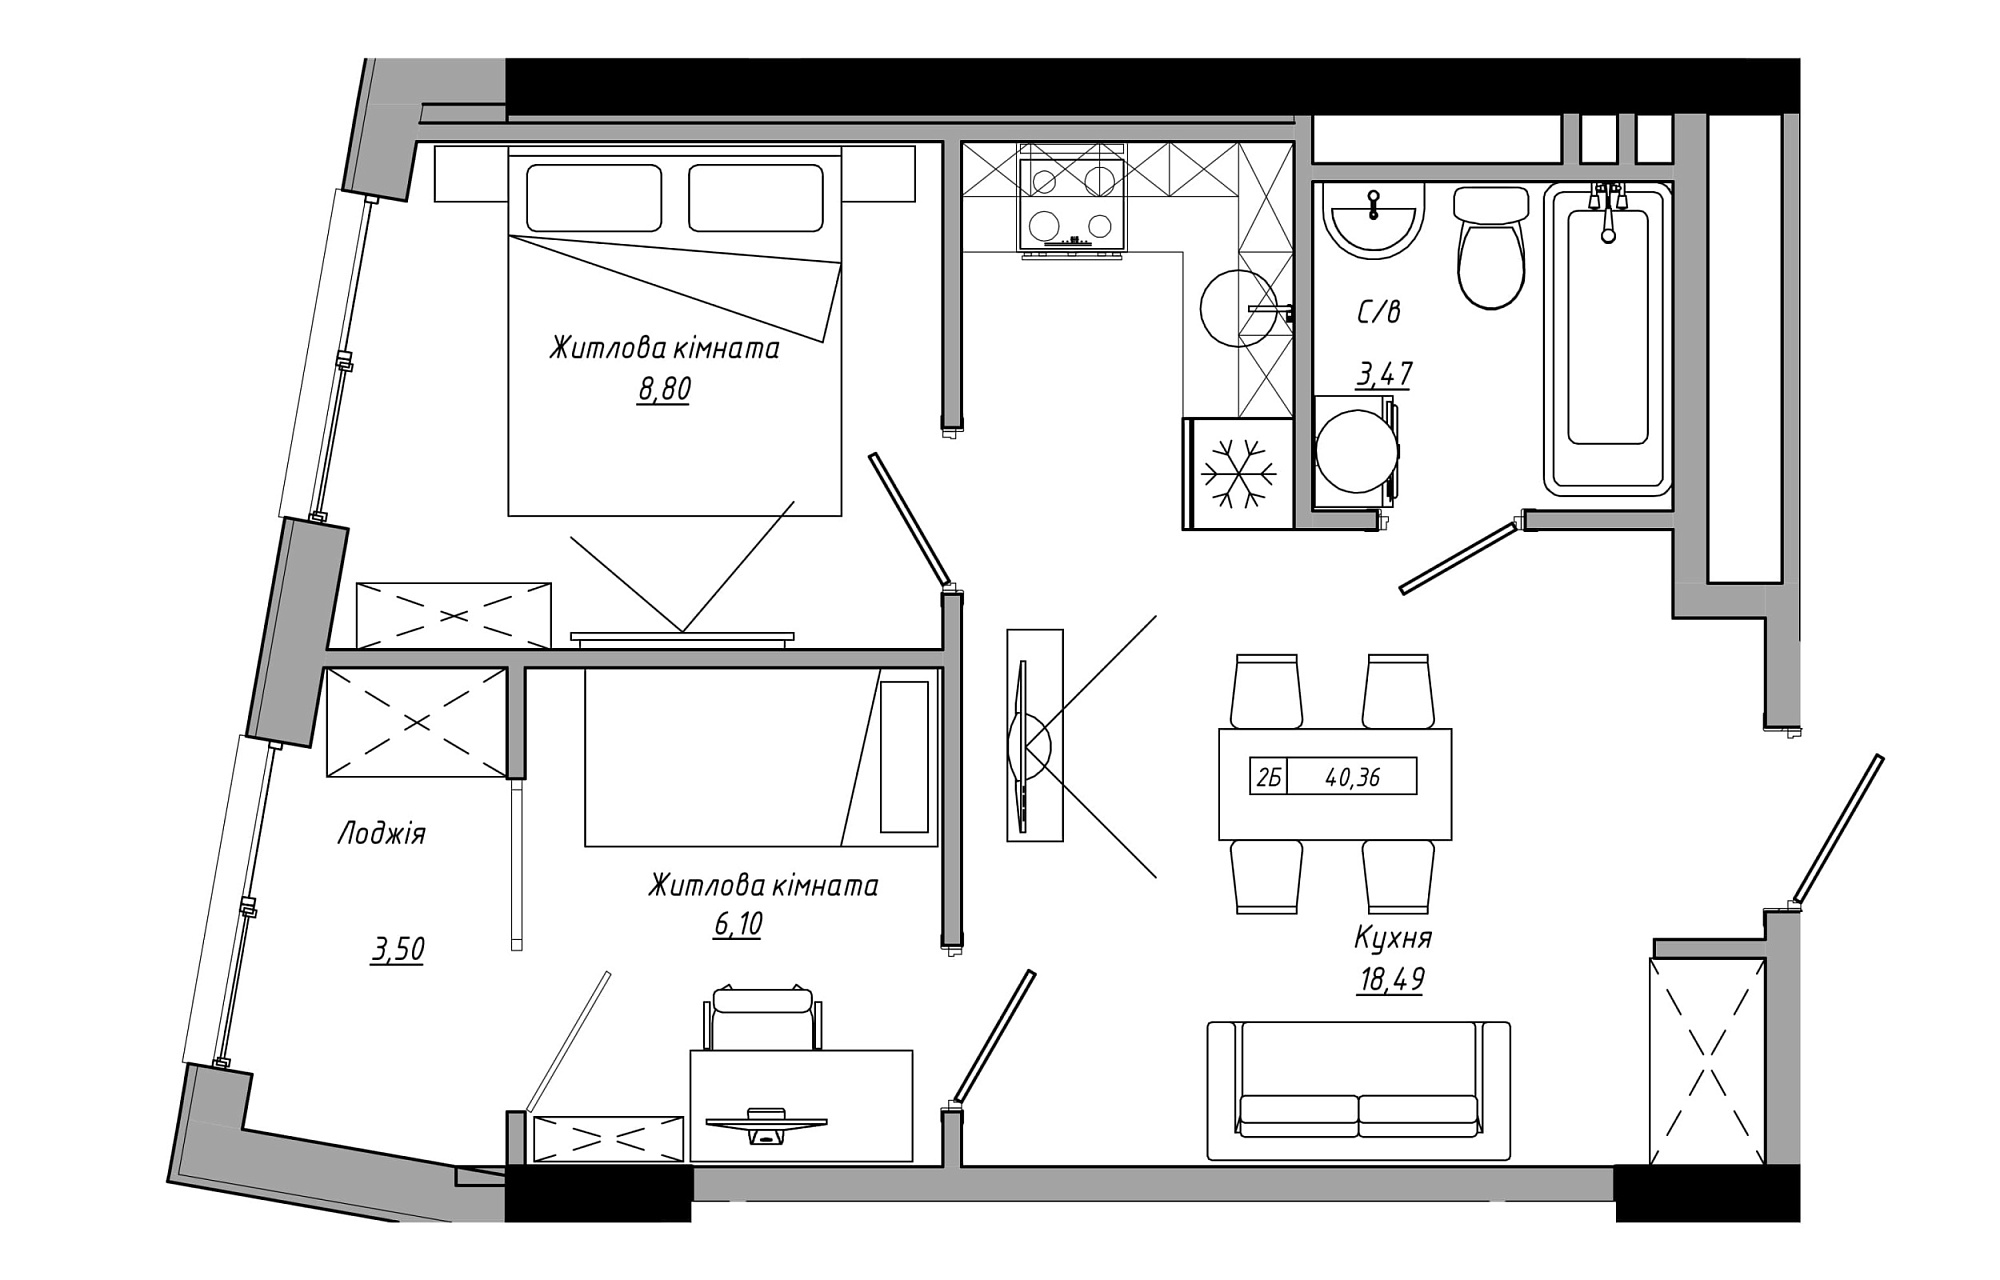 Планування 2-к квартира площею 40.36м2, AB-21-10/00007.